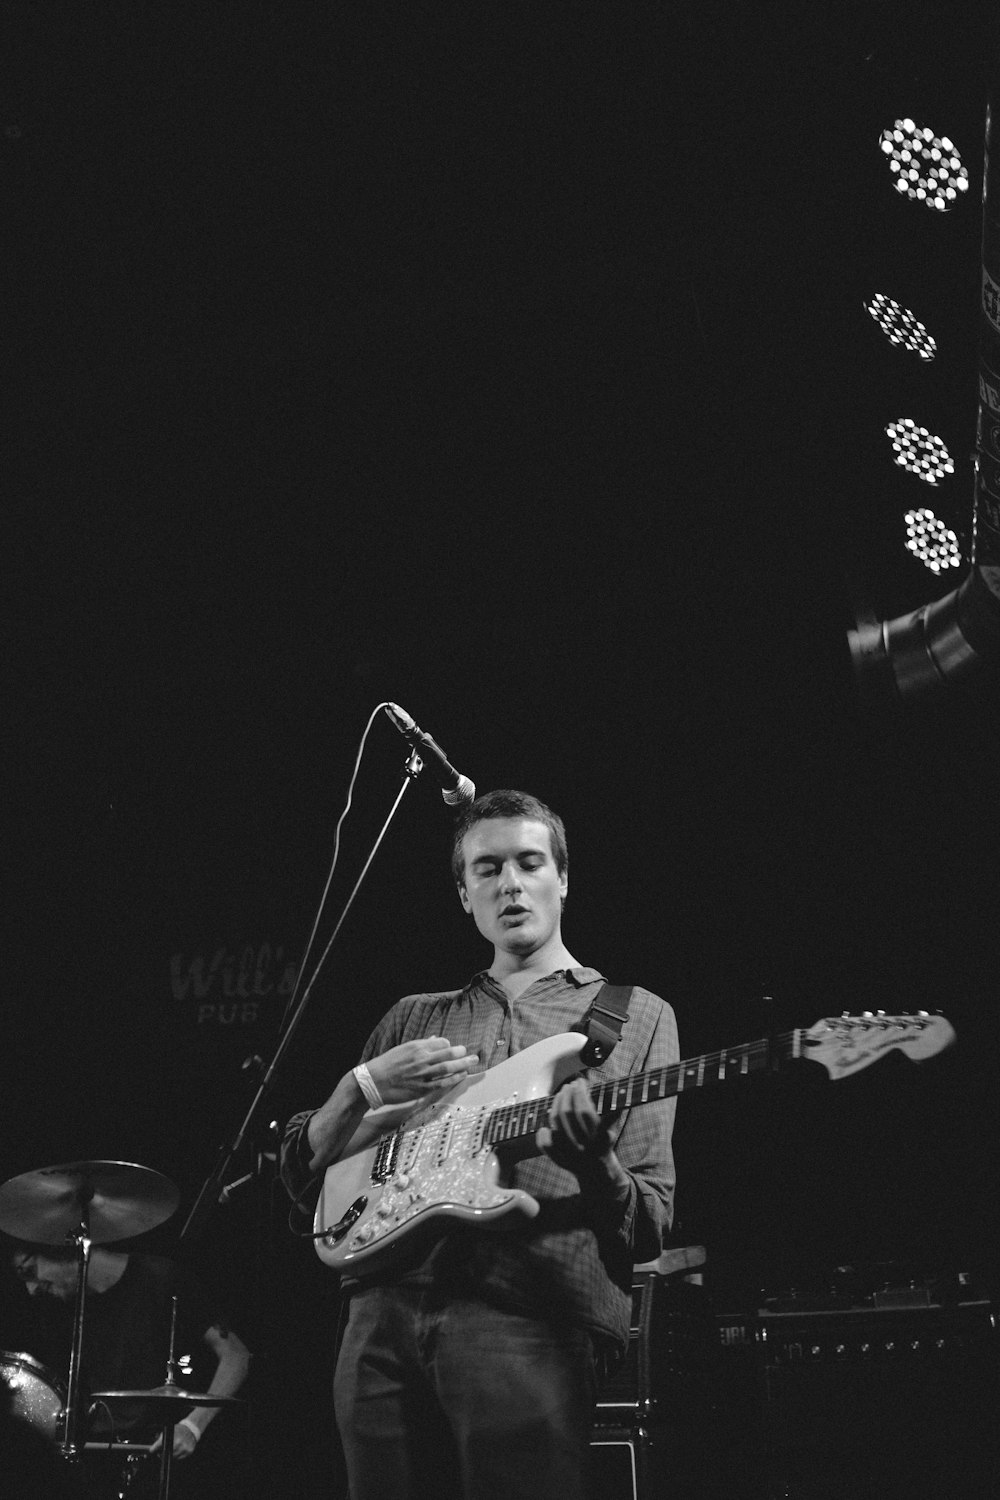 fotografia em tons de cinza do homem tocando guitarra no palco